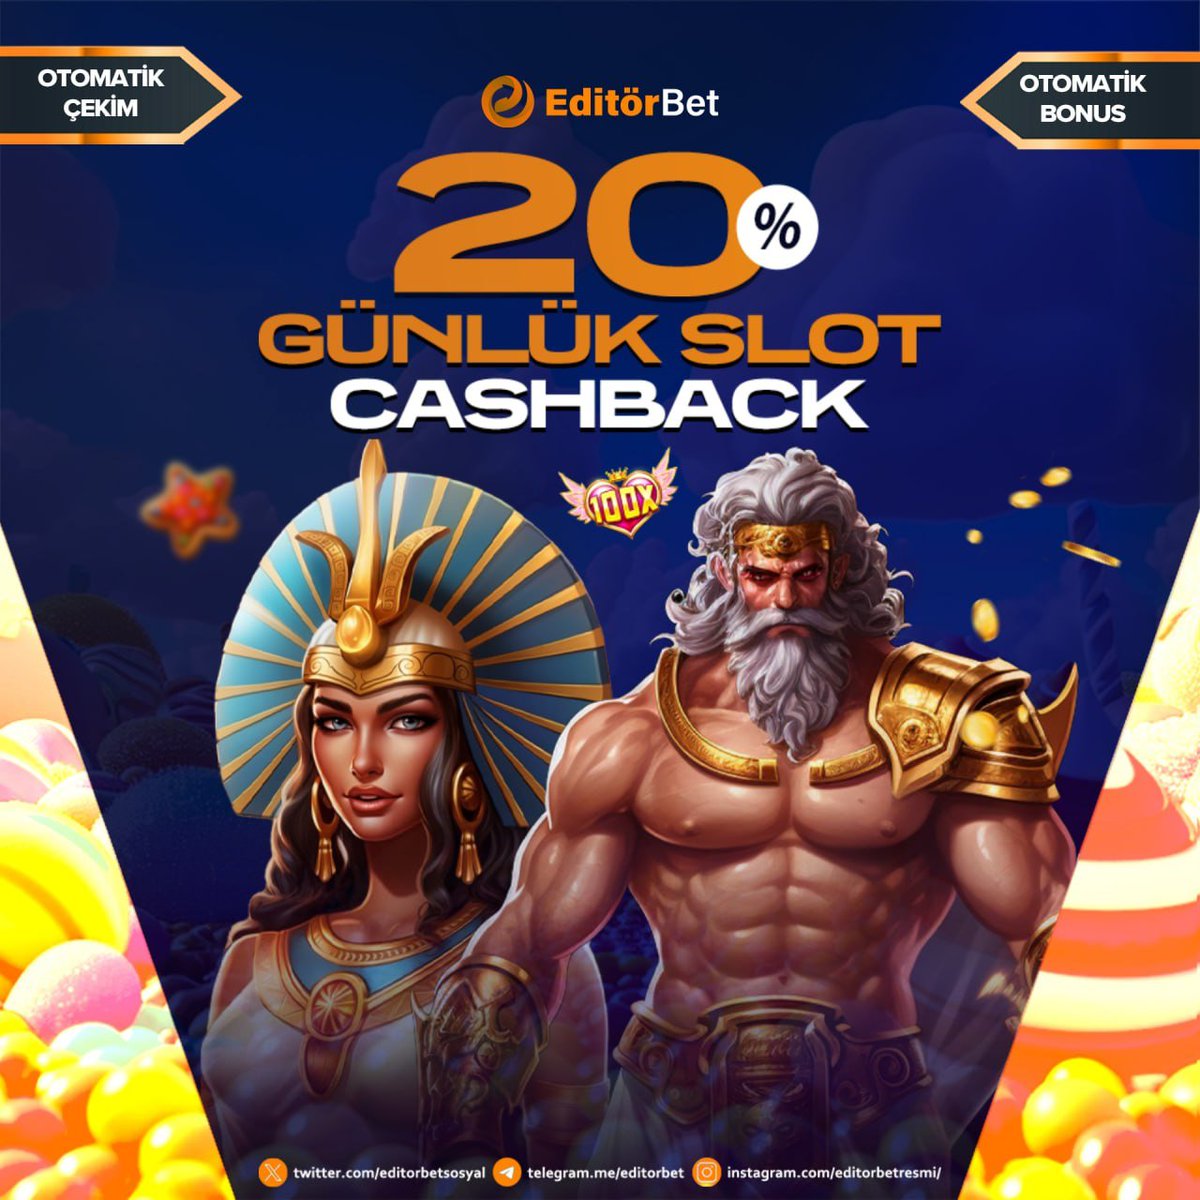 👍 EditörBET Günlük Slot Bonusu

🎁Günlük Kaybınıza Extra %20 CashBack (Nakit) Bonus

🆓Çevrimsizdir

❗ Sınırsız CashBack ve Sınırsız Kazanç

✅ Güncel giriş : editorbet.com/affiliates/?bt…